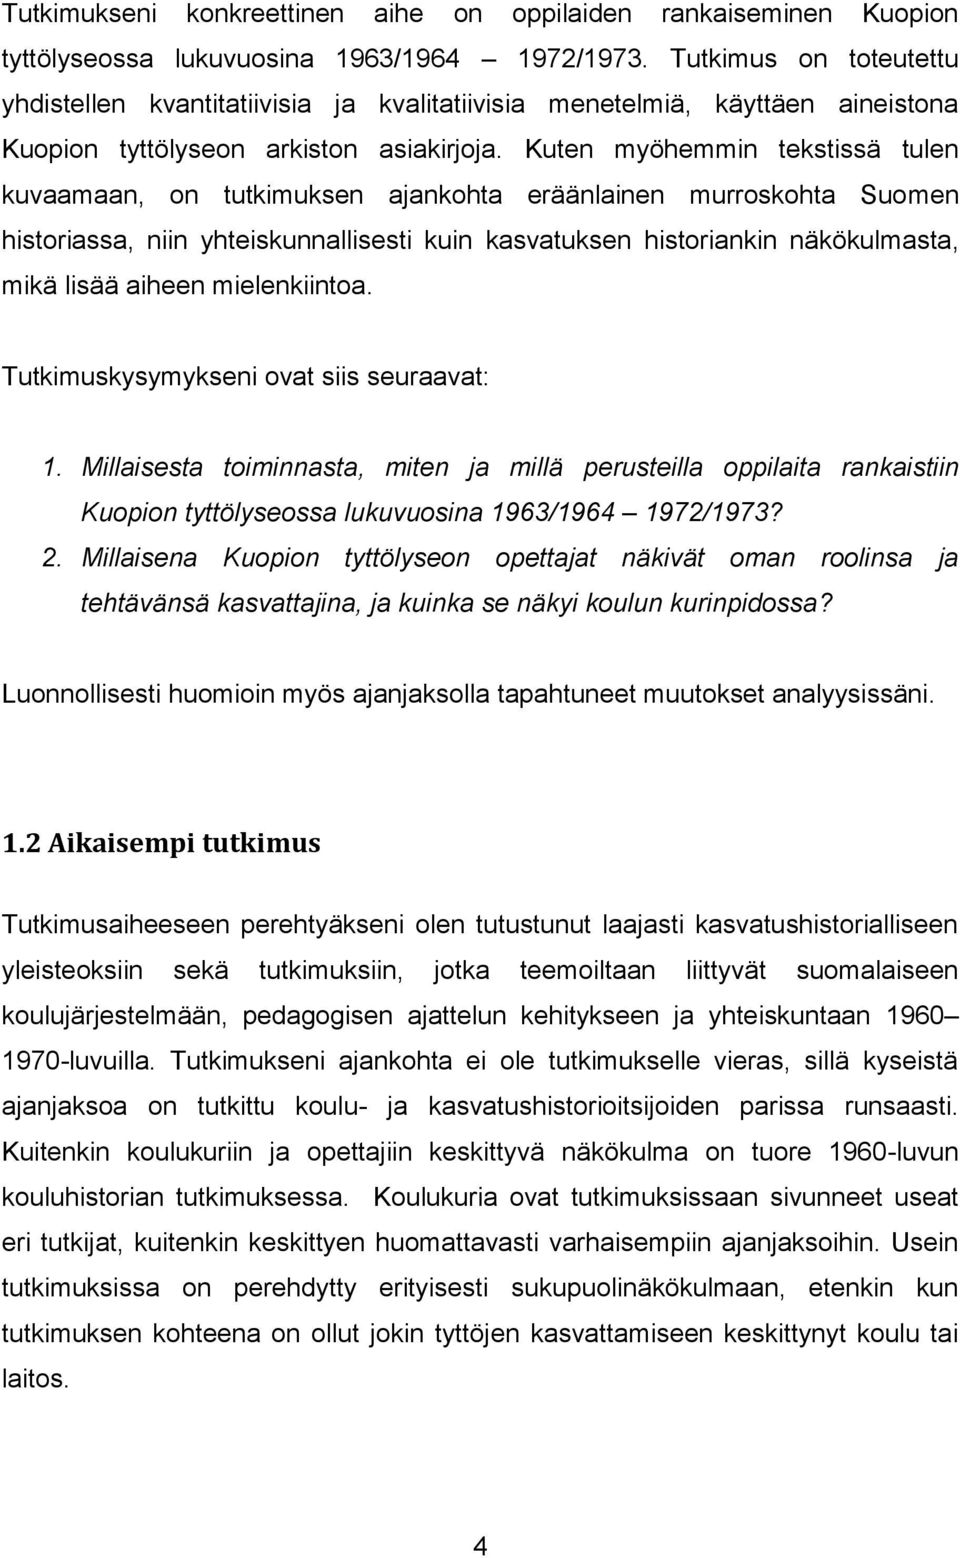 Kuten myöhemmin tekstissä tulen kuvaamaan, on tutkimuksen ajankohta eräänlainen murroskohta Suomen historiassa, niin yhteiskunnallisesti kuin kasvatuksen historiankin näkökulmasta, mikä lisää aiheen